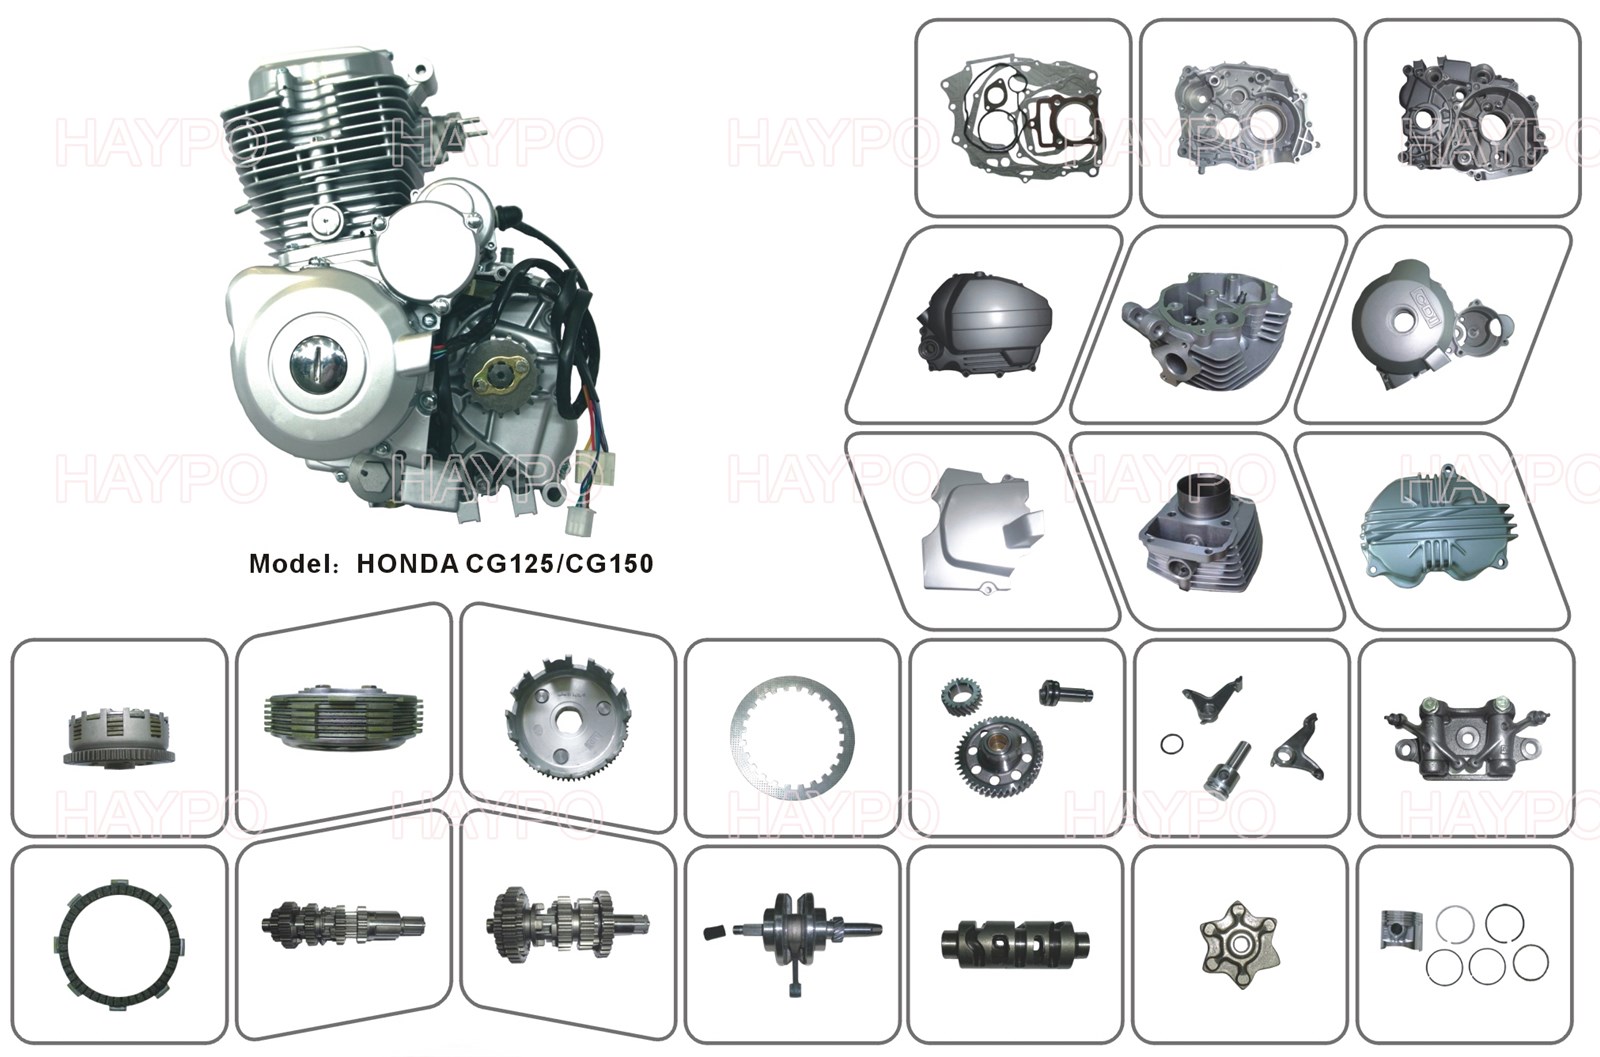 HONDA CG125 - Motorcycle Parts